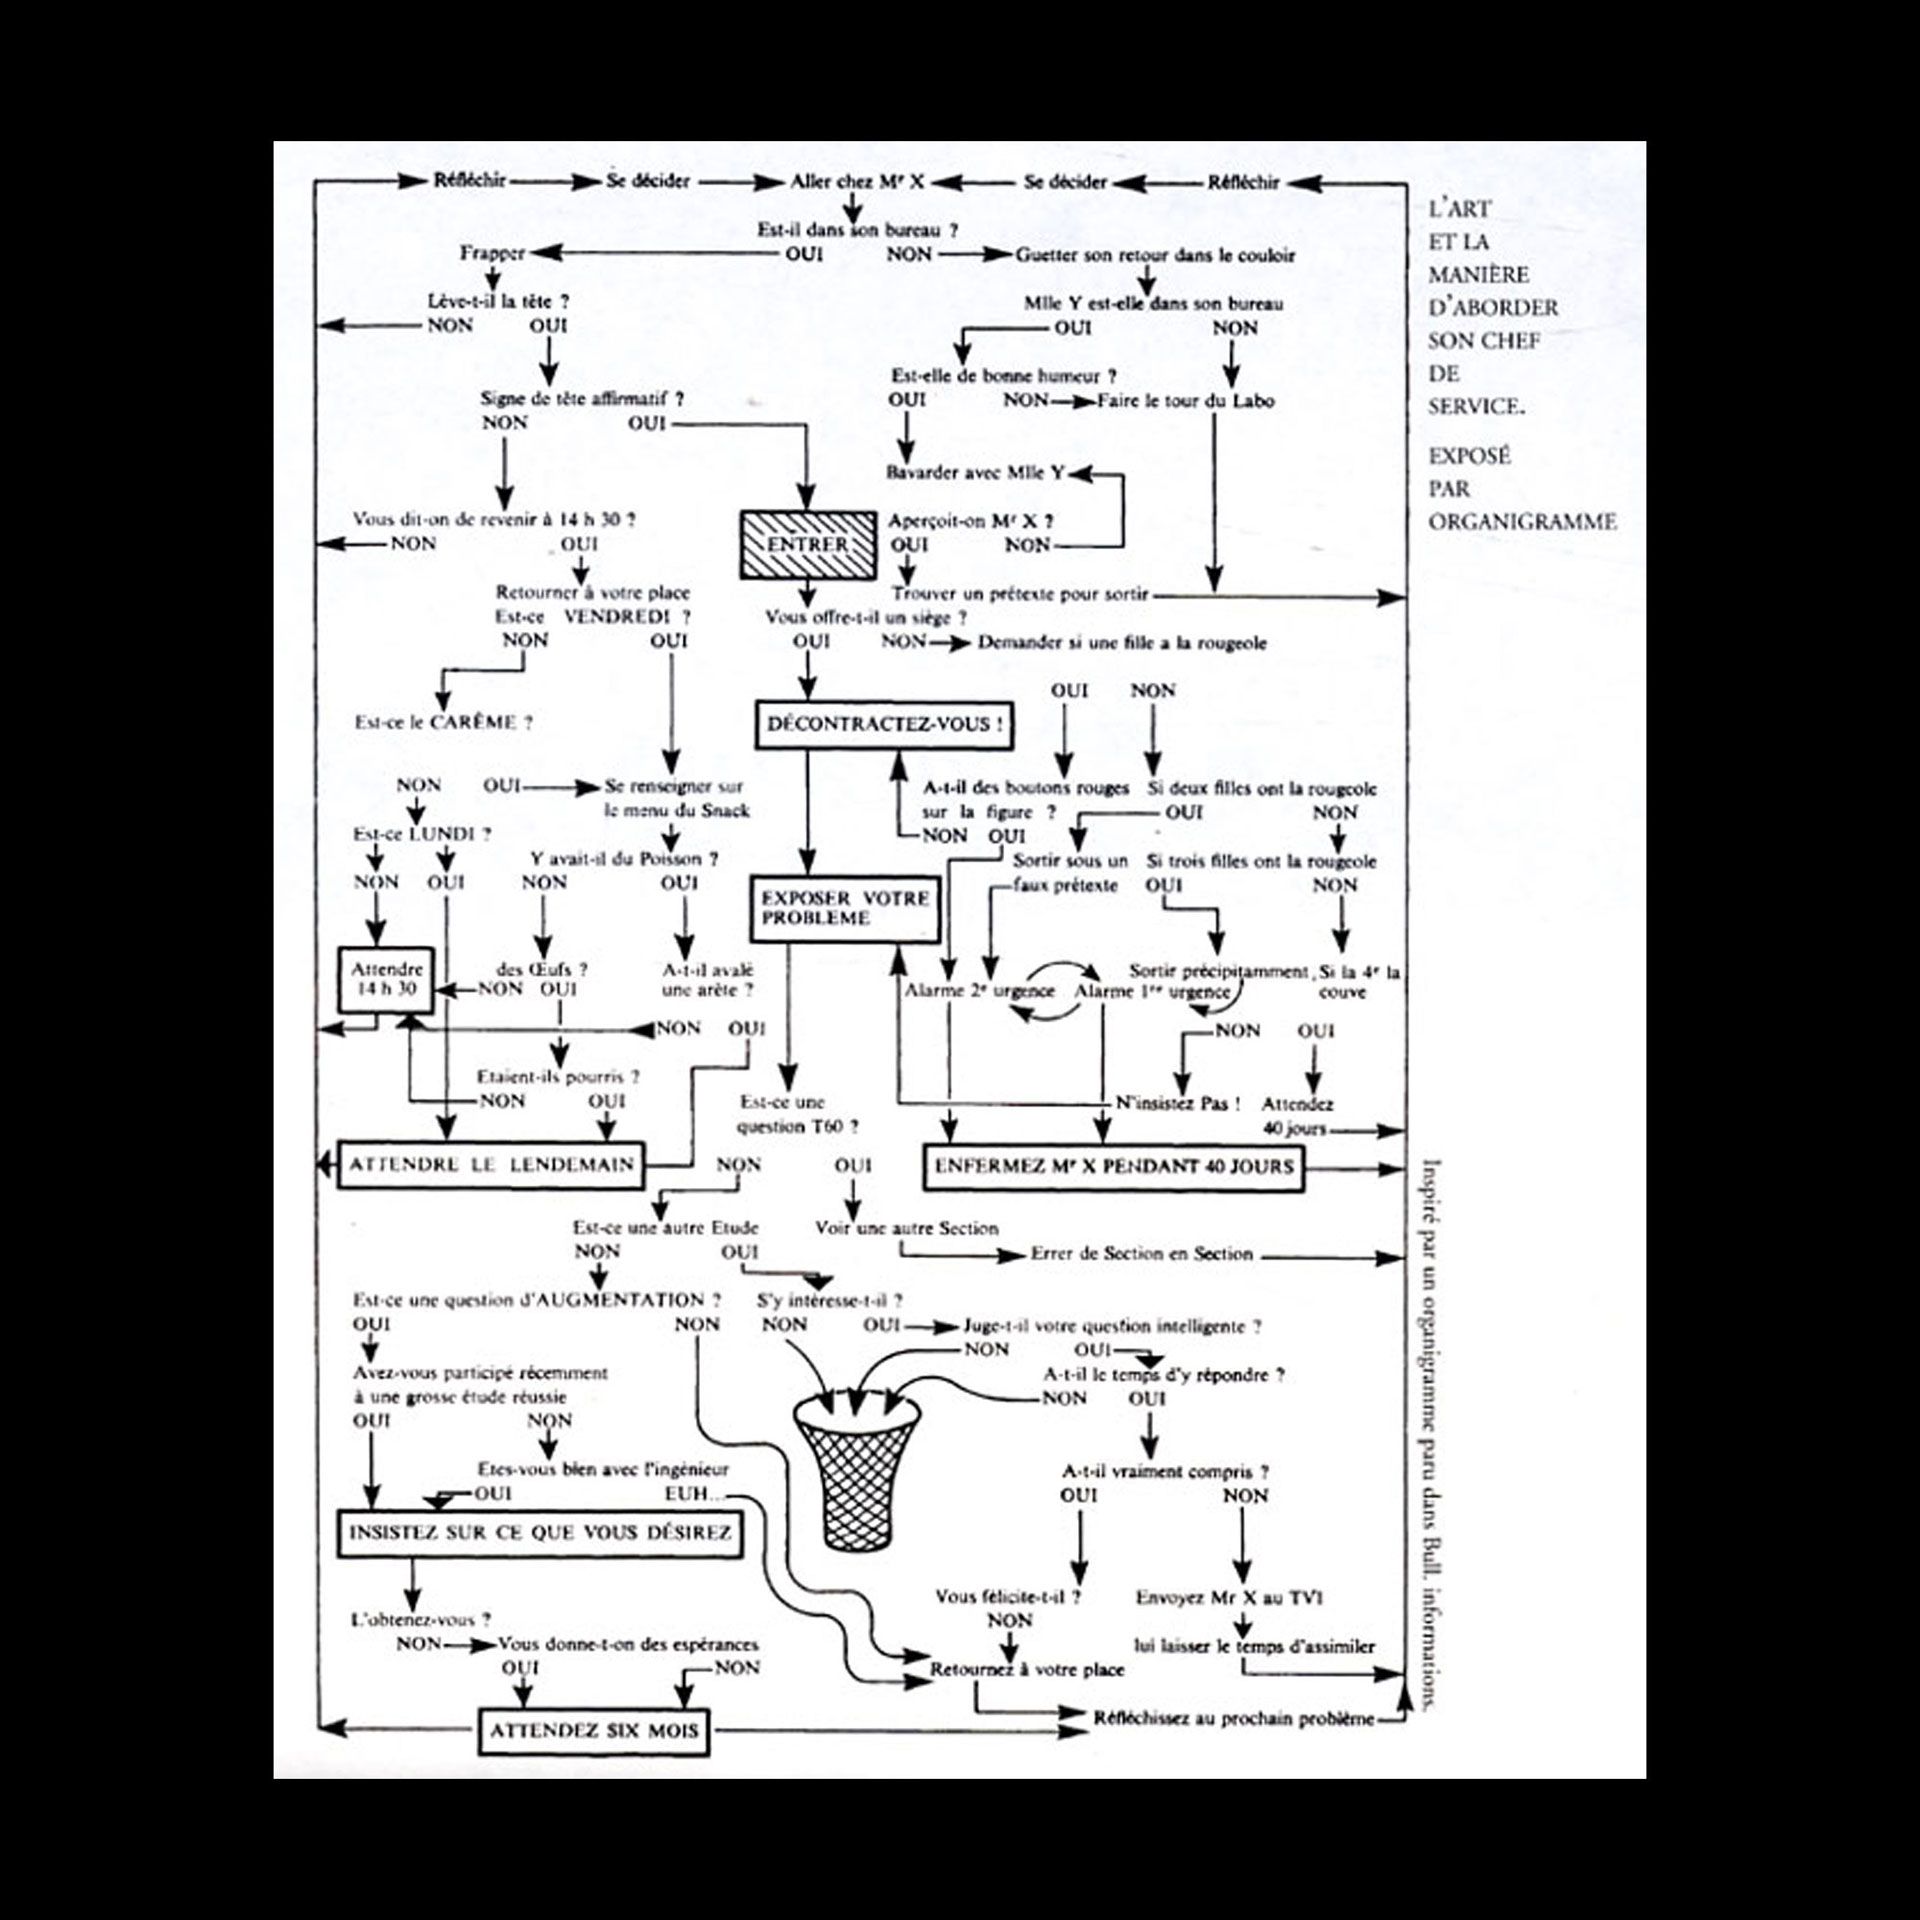 Georges Perec, diagram in “L’art et la manière d’aborder son chef de service pour lui demander une augmentation,”,, 1968